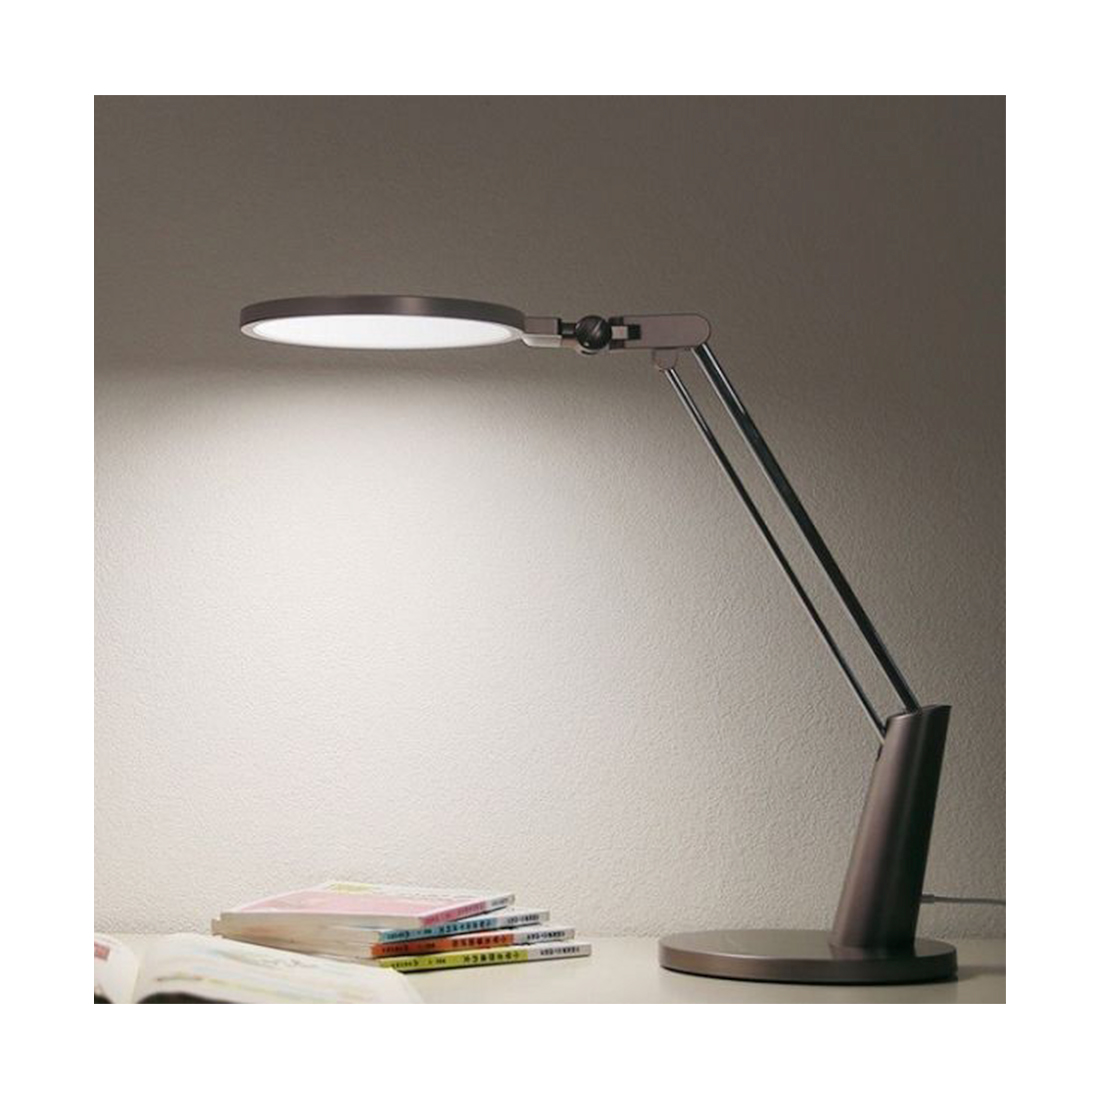  лампа Yeelight LED Eye-friendly Desk Lamp Pro - оптом